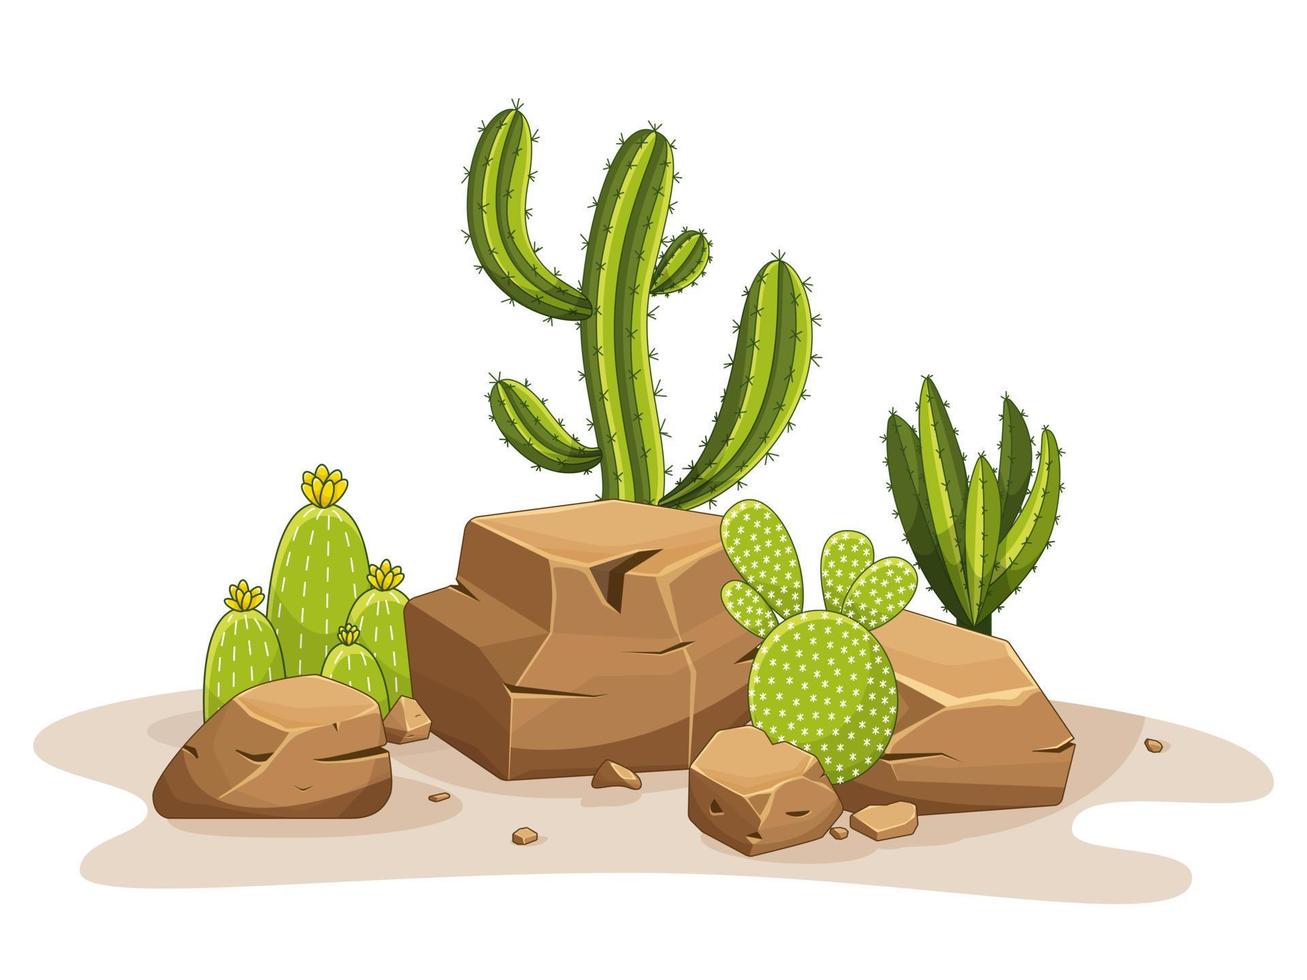 cactus avec des épines et des pierres. plante verte mexicaine avec épines et rochers. élément du paysage désertique et méridional. illustration de vecteur plat de dessin animé. isolé sur fond blanc